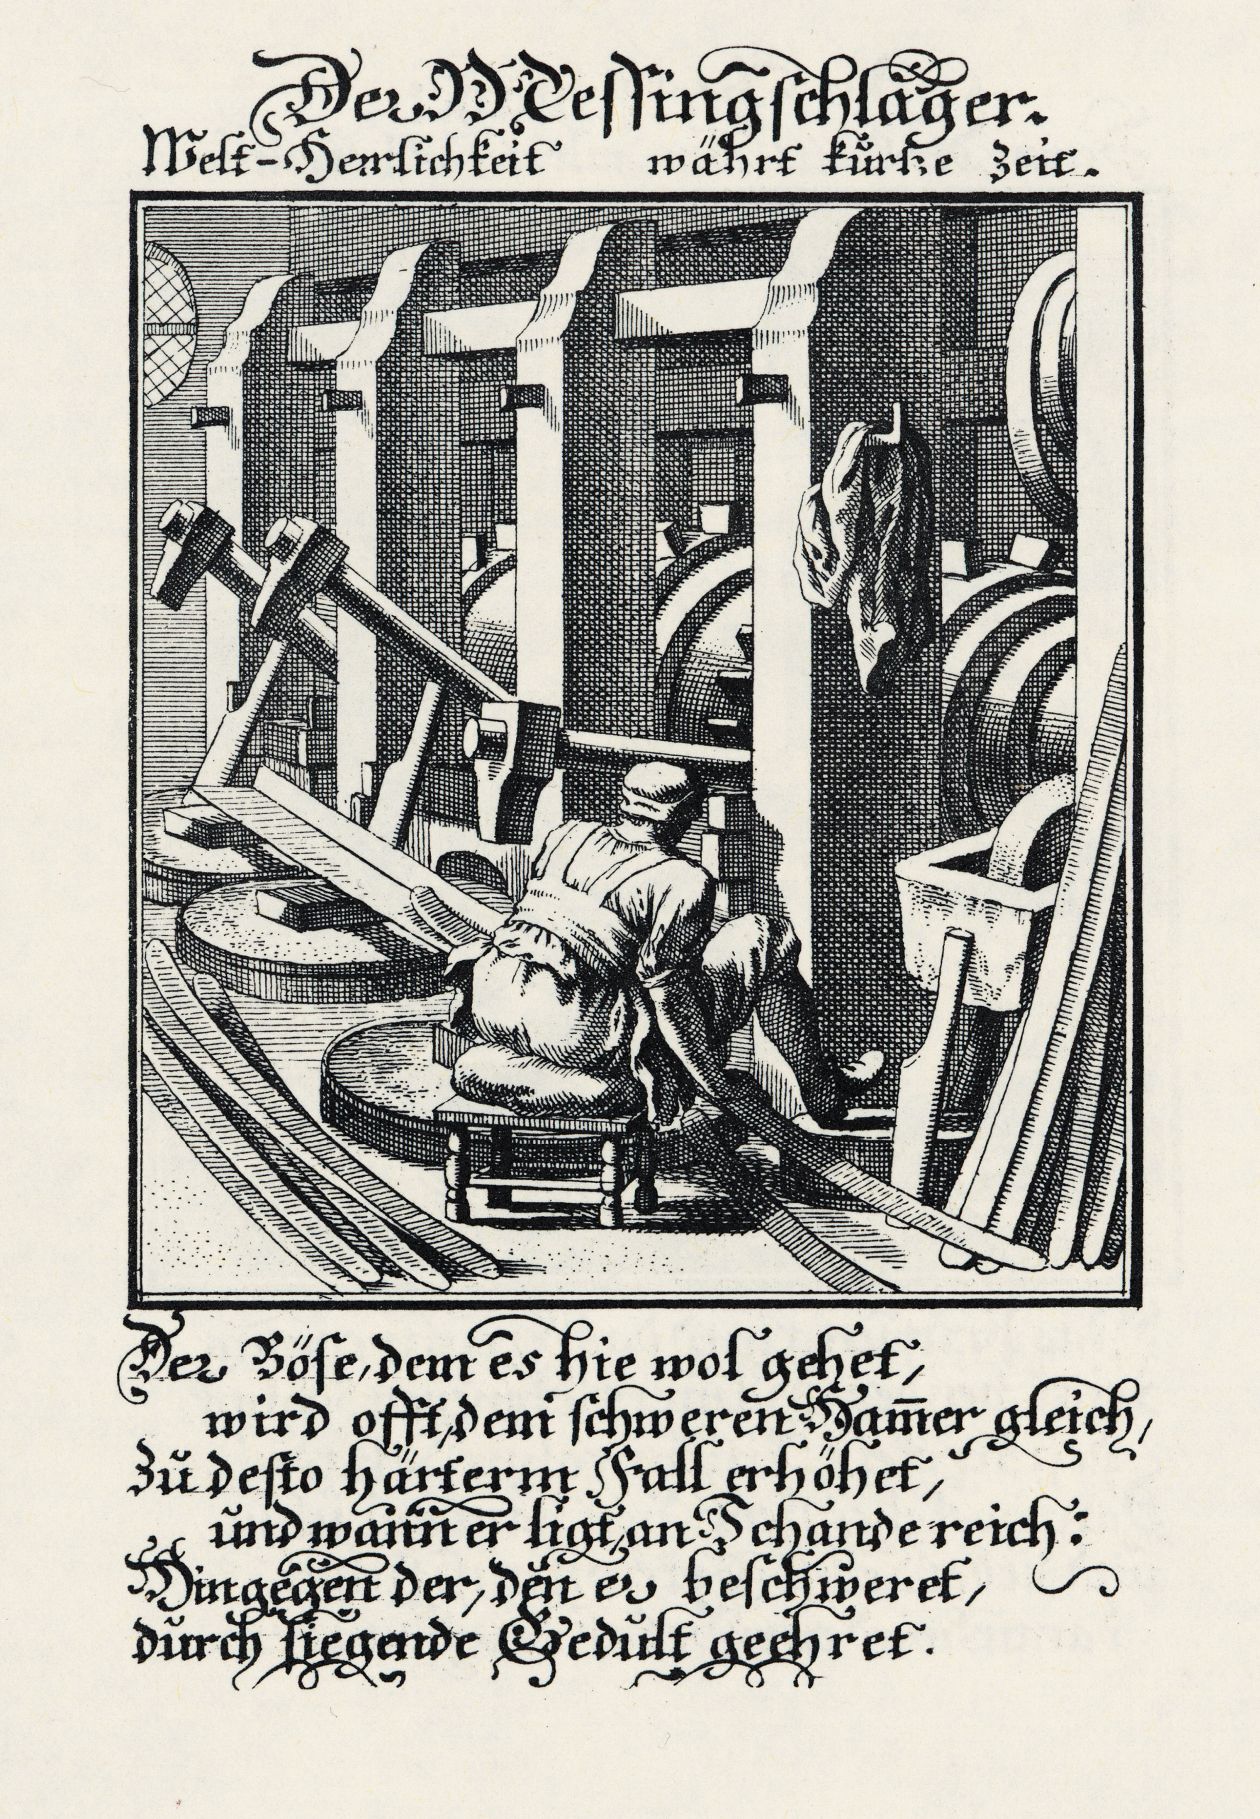 Historische Abbildung eines Messingschlägers (Christoph Weigel, 1698)